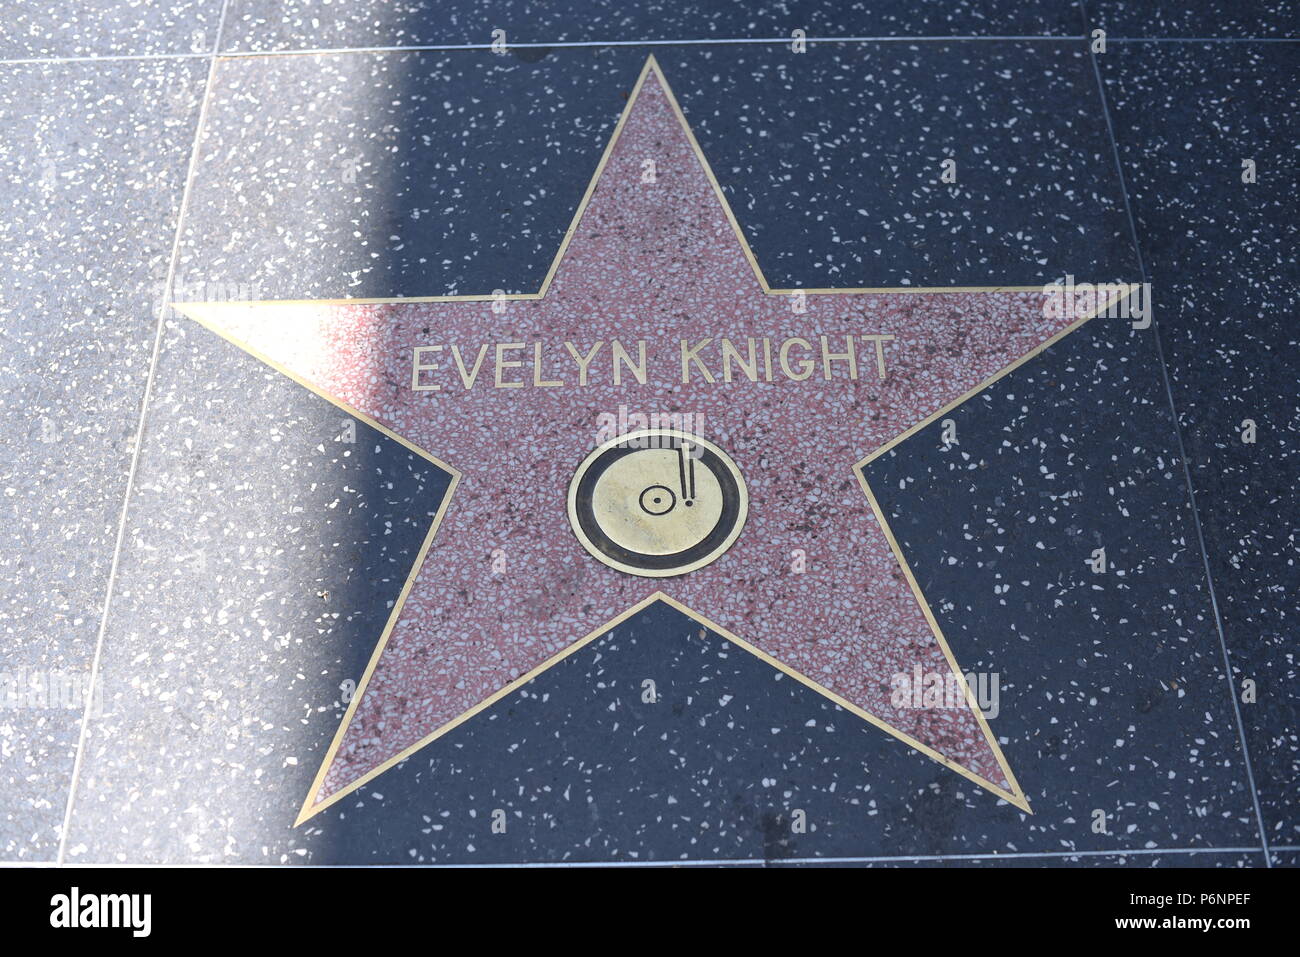 HOLLYWOOD, CA - 29 de junio: Evelyn Caballero estrella en el Paseo de la Fama de Hollywood en Hollywood, California el 29 de junio de 2018. Foto de stock